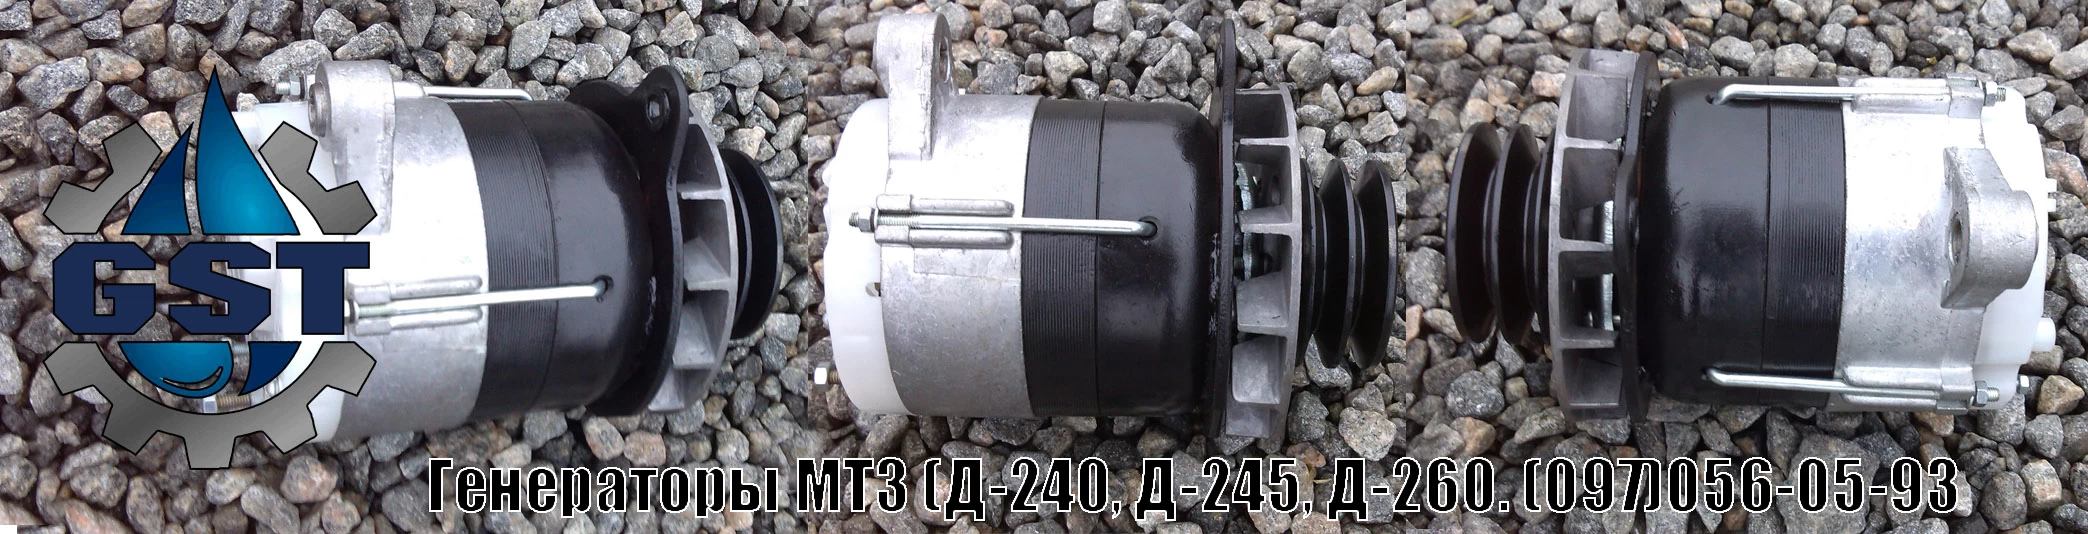 👉 ремонт генератора мтз 80 своими руками - и другое видео 🎬 на сайте garant-artem.ru ❗